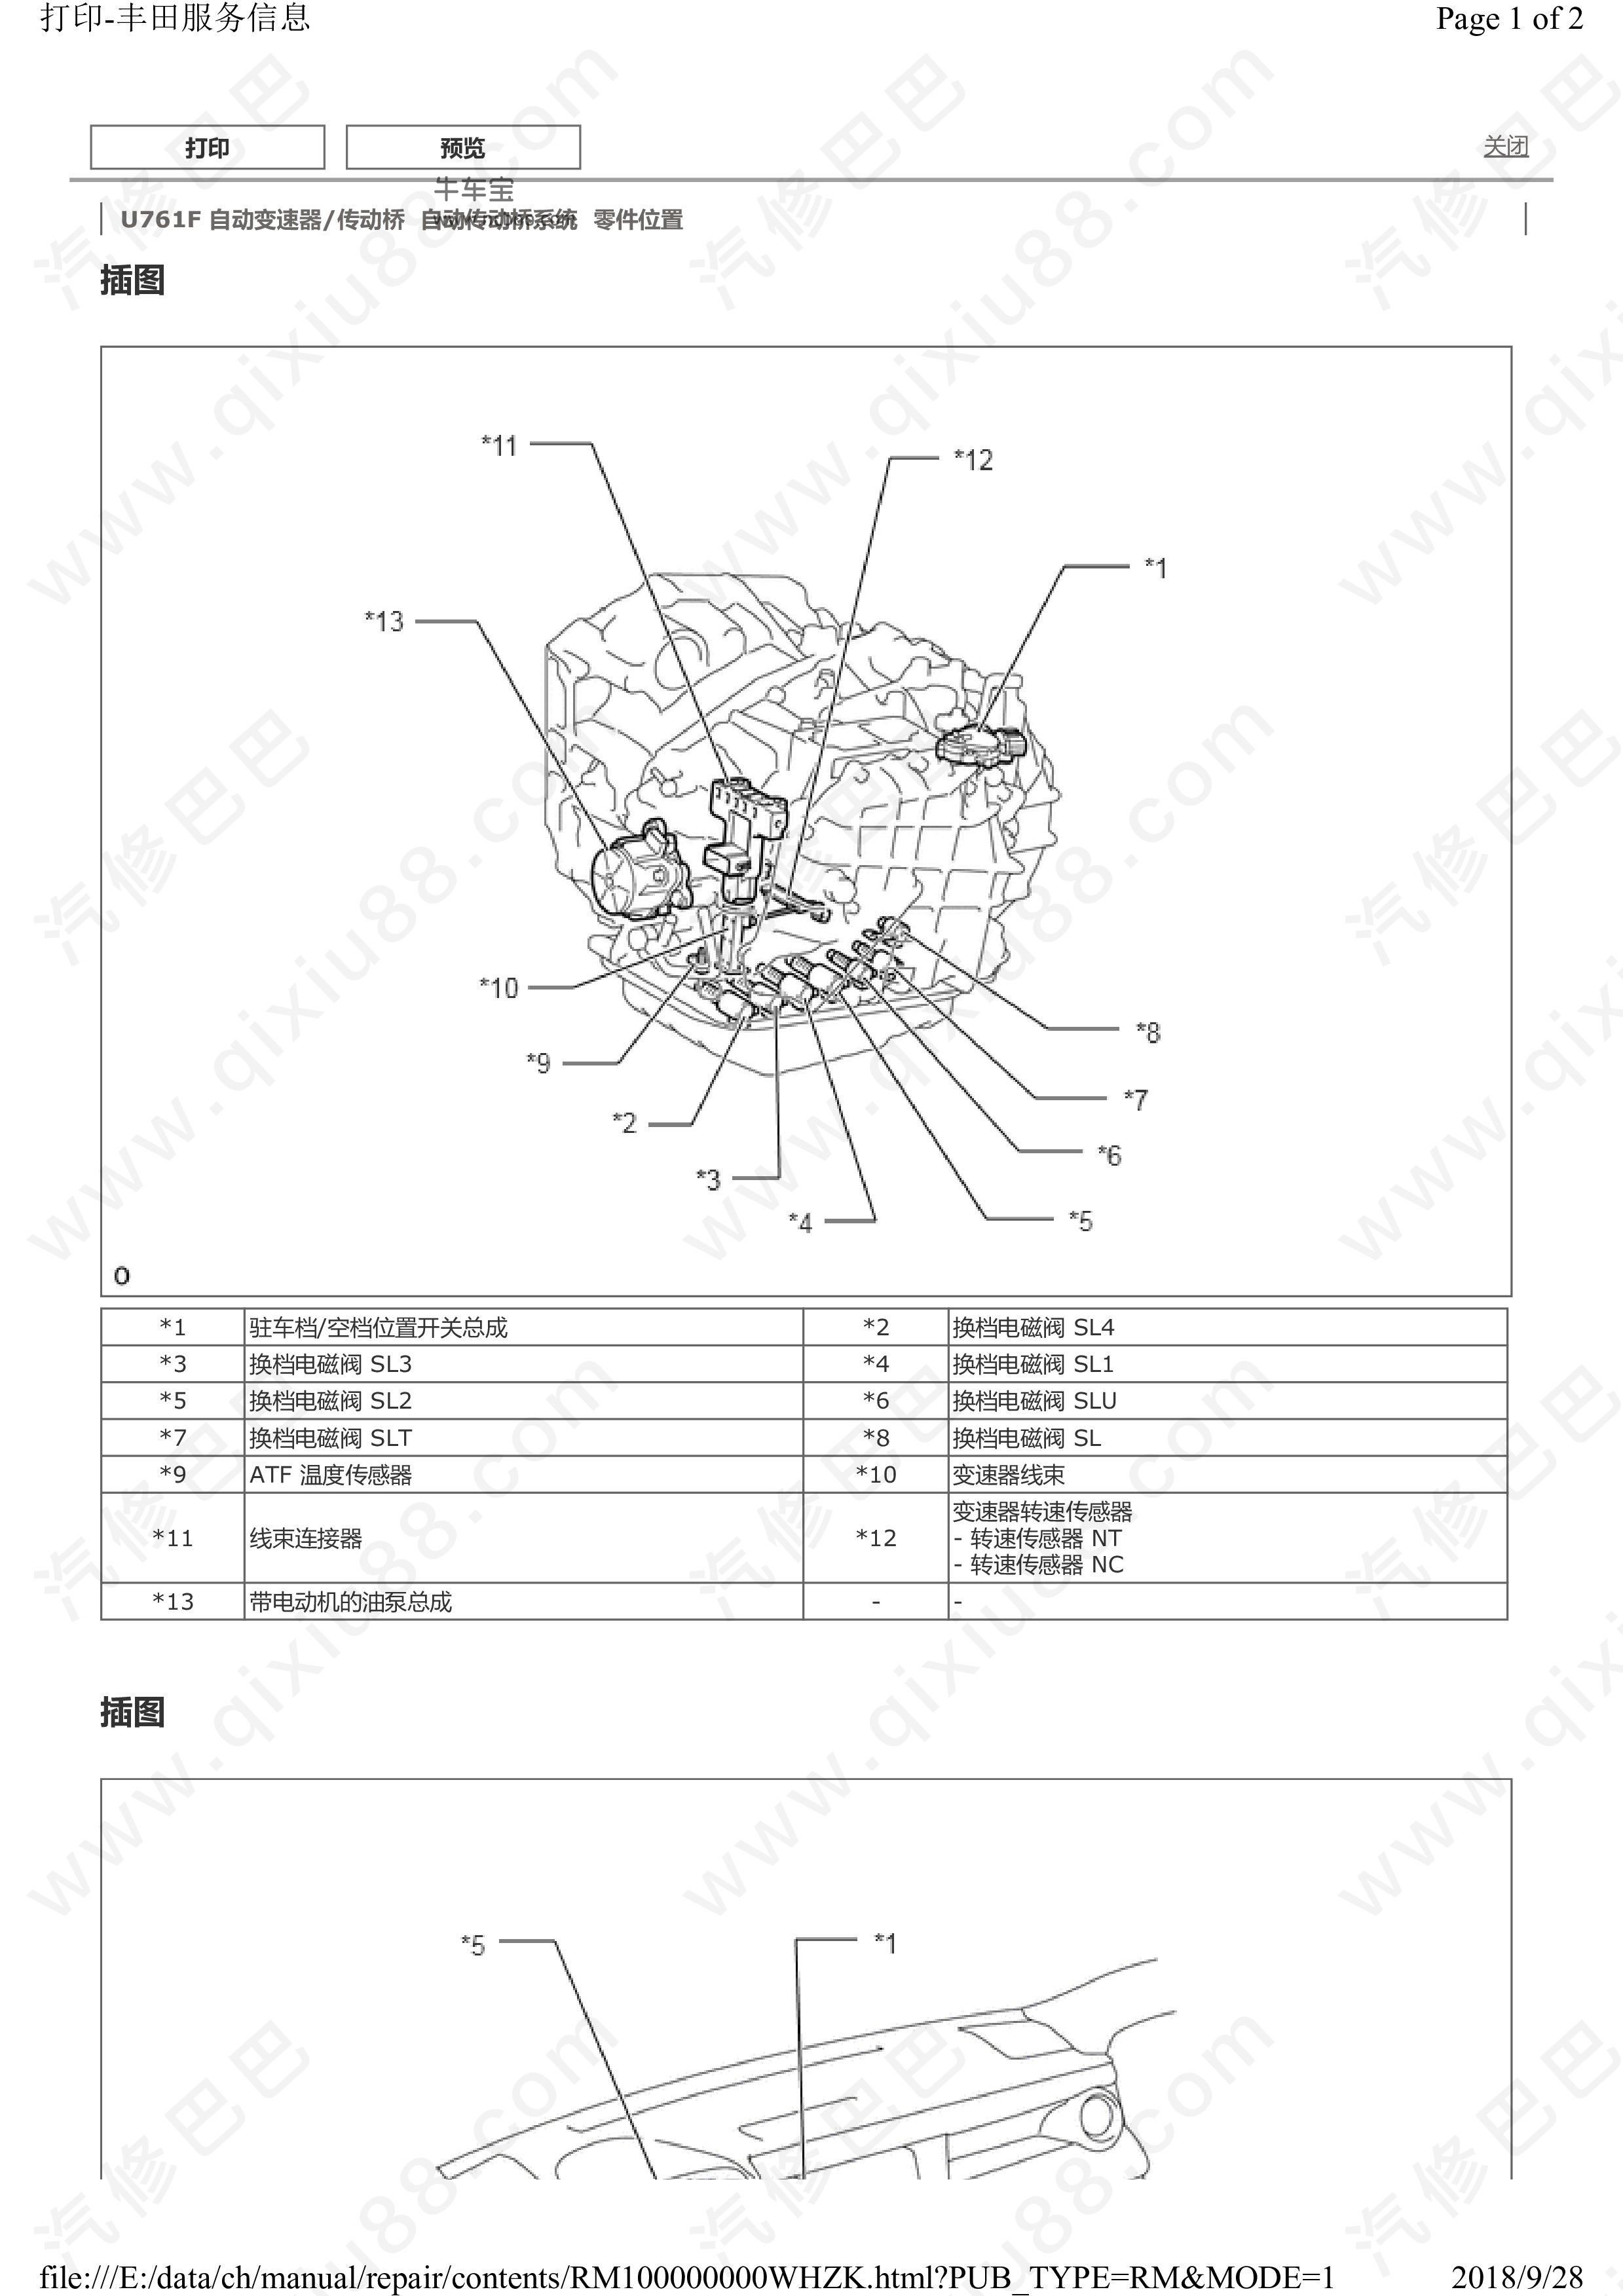 丰田RAV4自动传动桥系统维修手册和线路图及故障